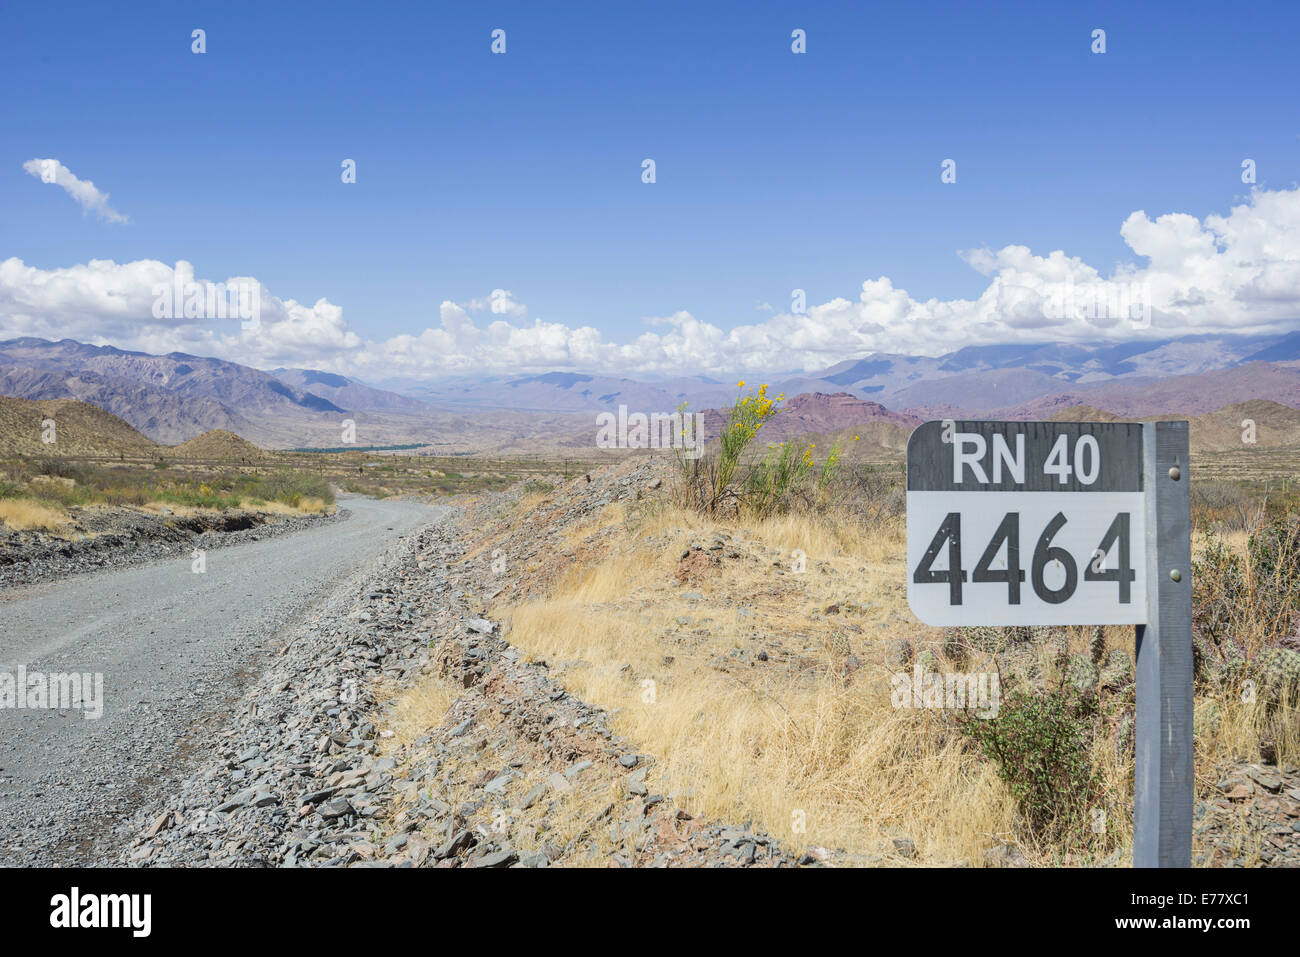 Zeichen mit der Straße Name auf der Ruta Nacional 40, Ruta 40 oder Rn40 mit kilometer Marker, in der Nähe von Salta, Argentinien Stockfoto